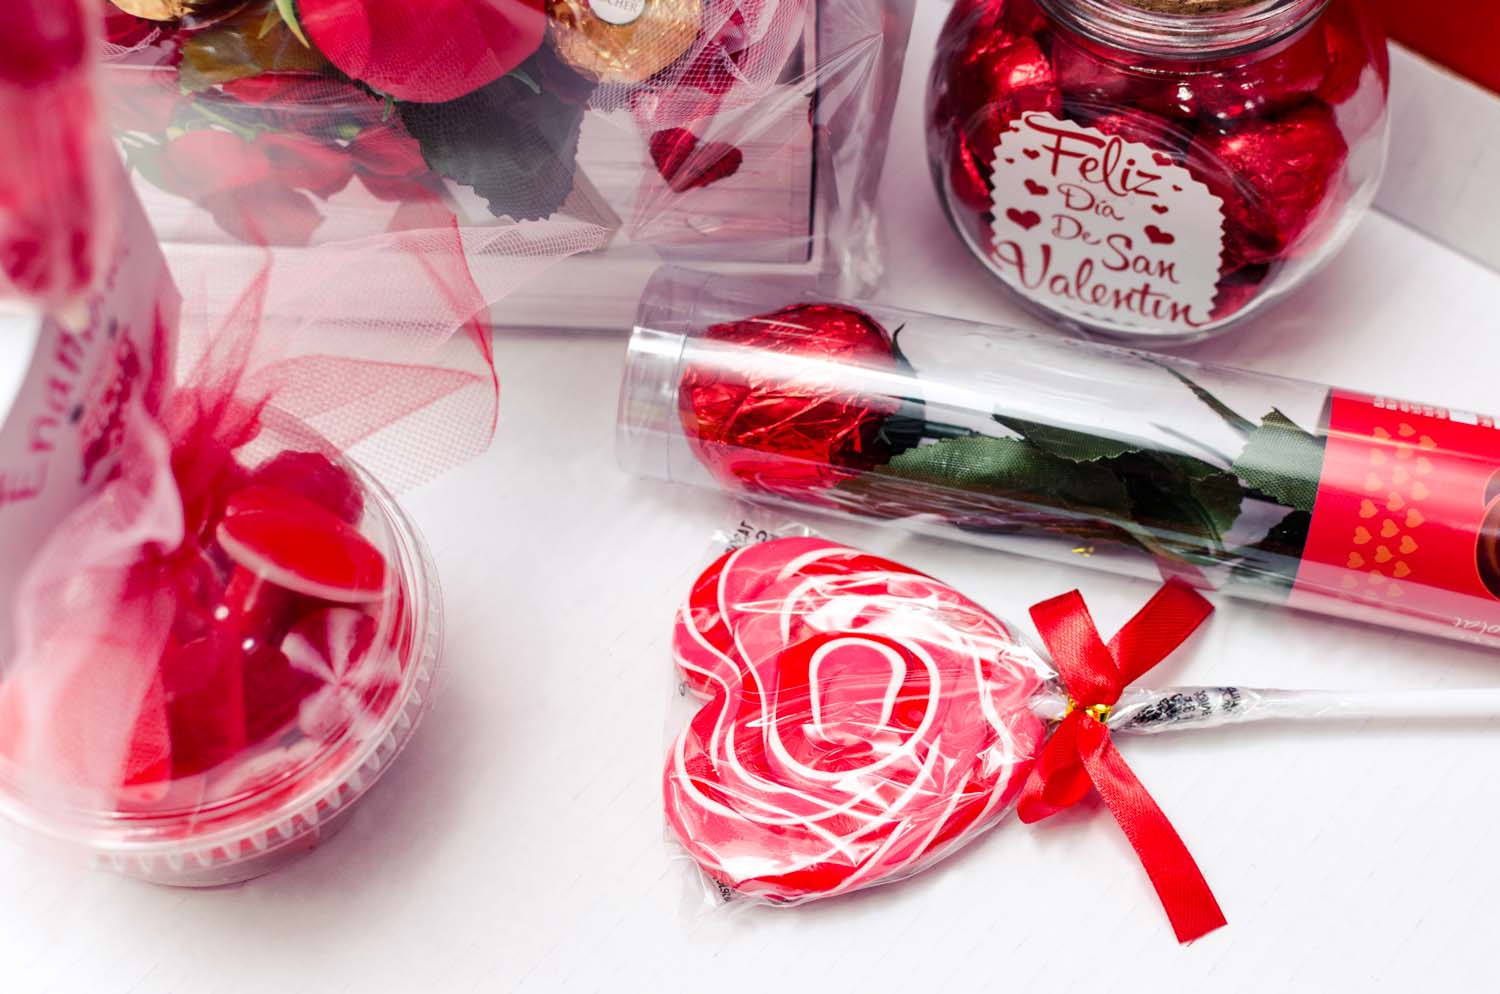 Dulces de San Valentín - Bombones de chocolate en forma de corazón y café  fotos de archivo